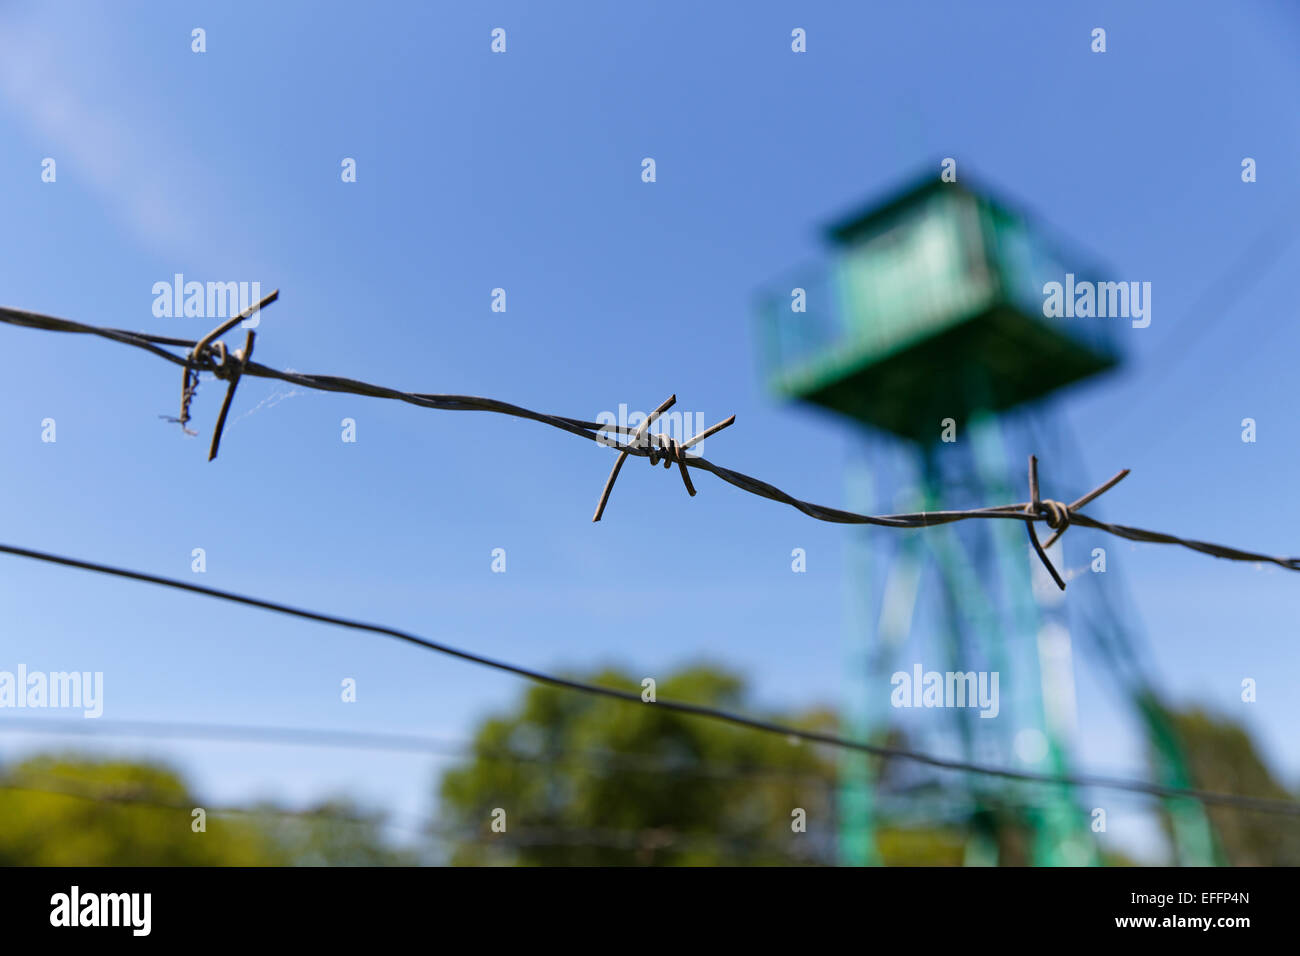 Austria, Burgenland, Bildein, detail of barbed wire fence Stock Photo